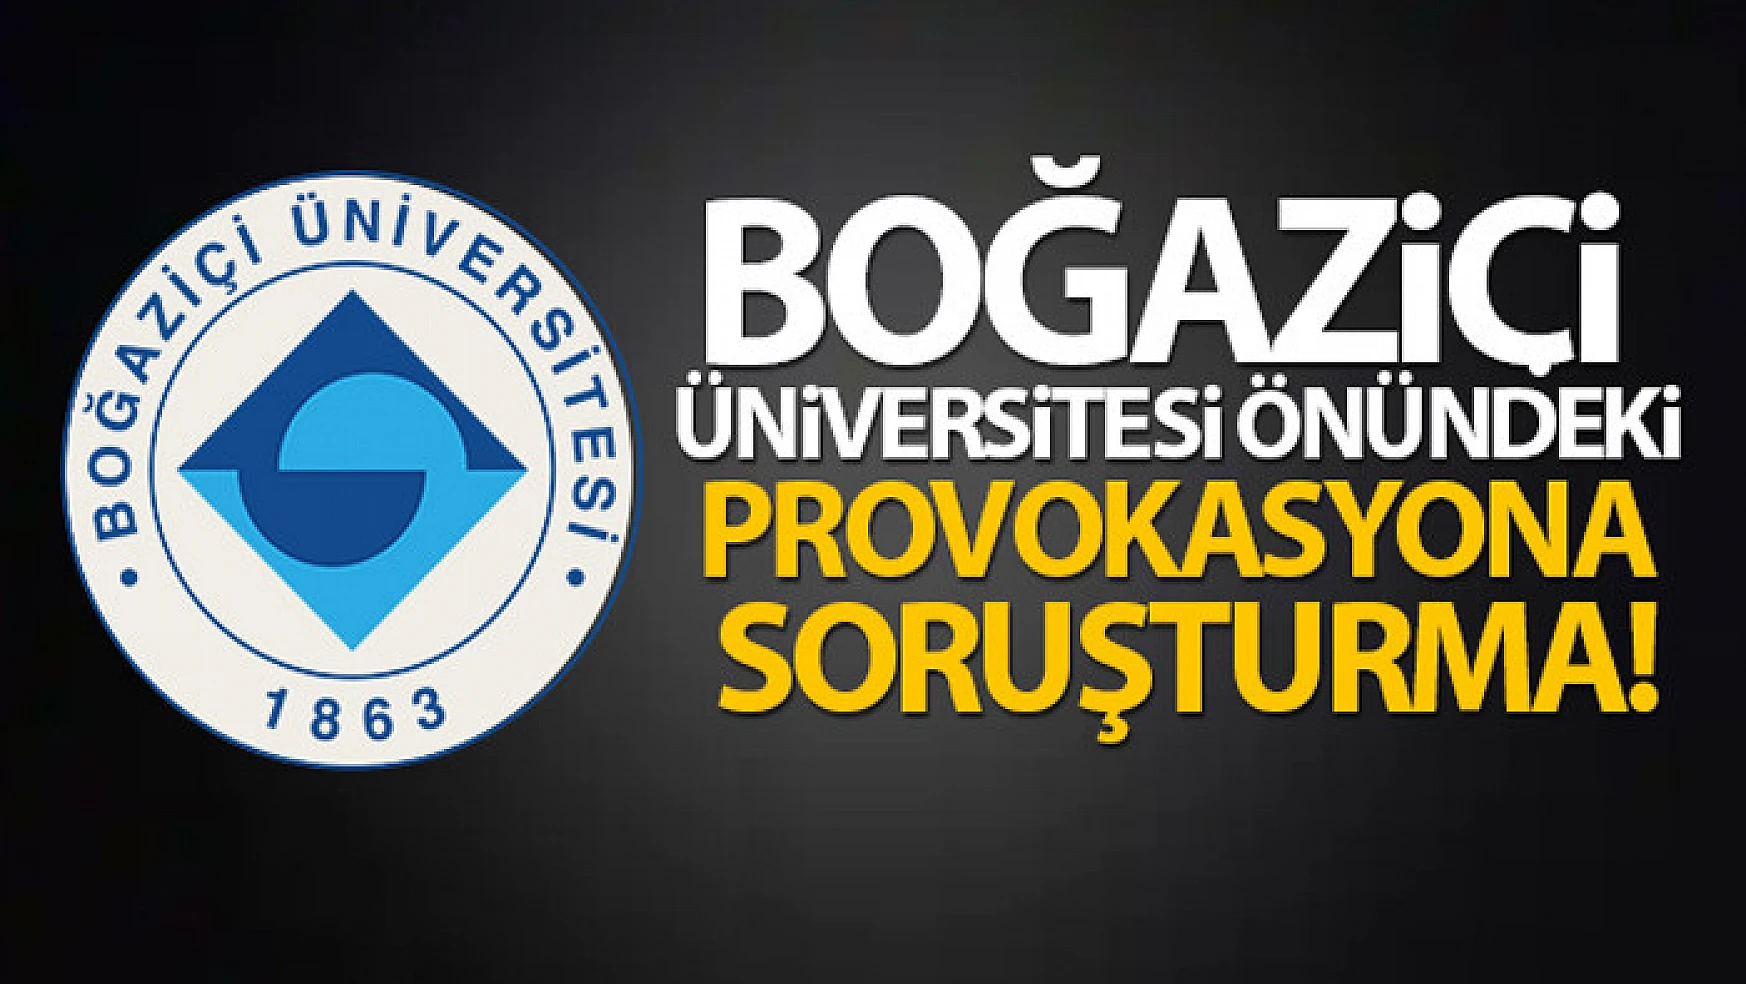 Boğaziçi Üniversitesi önünde Kabe fotoğrafı serilmesine soruşturma